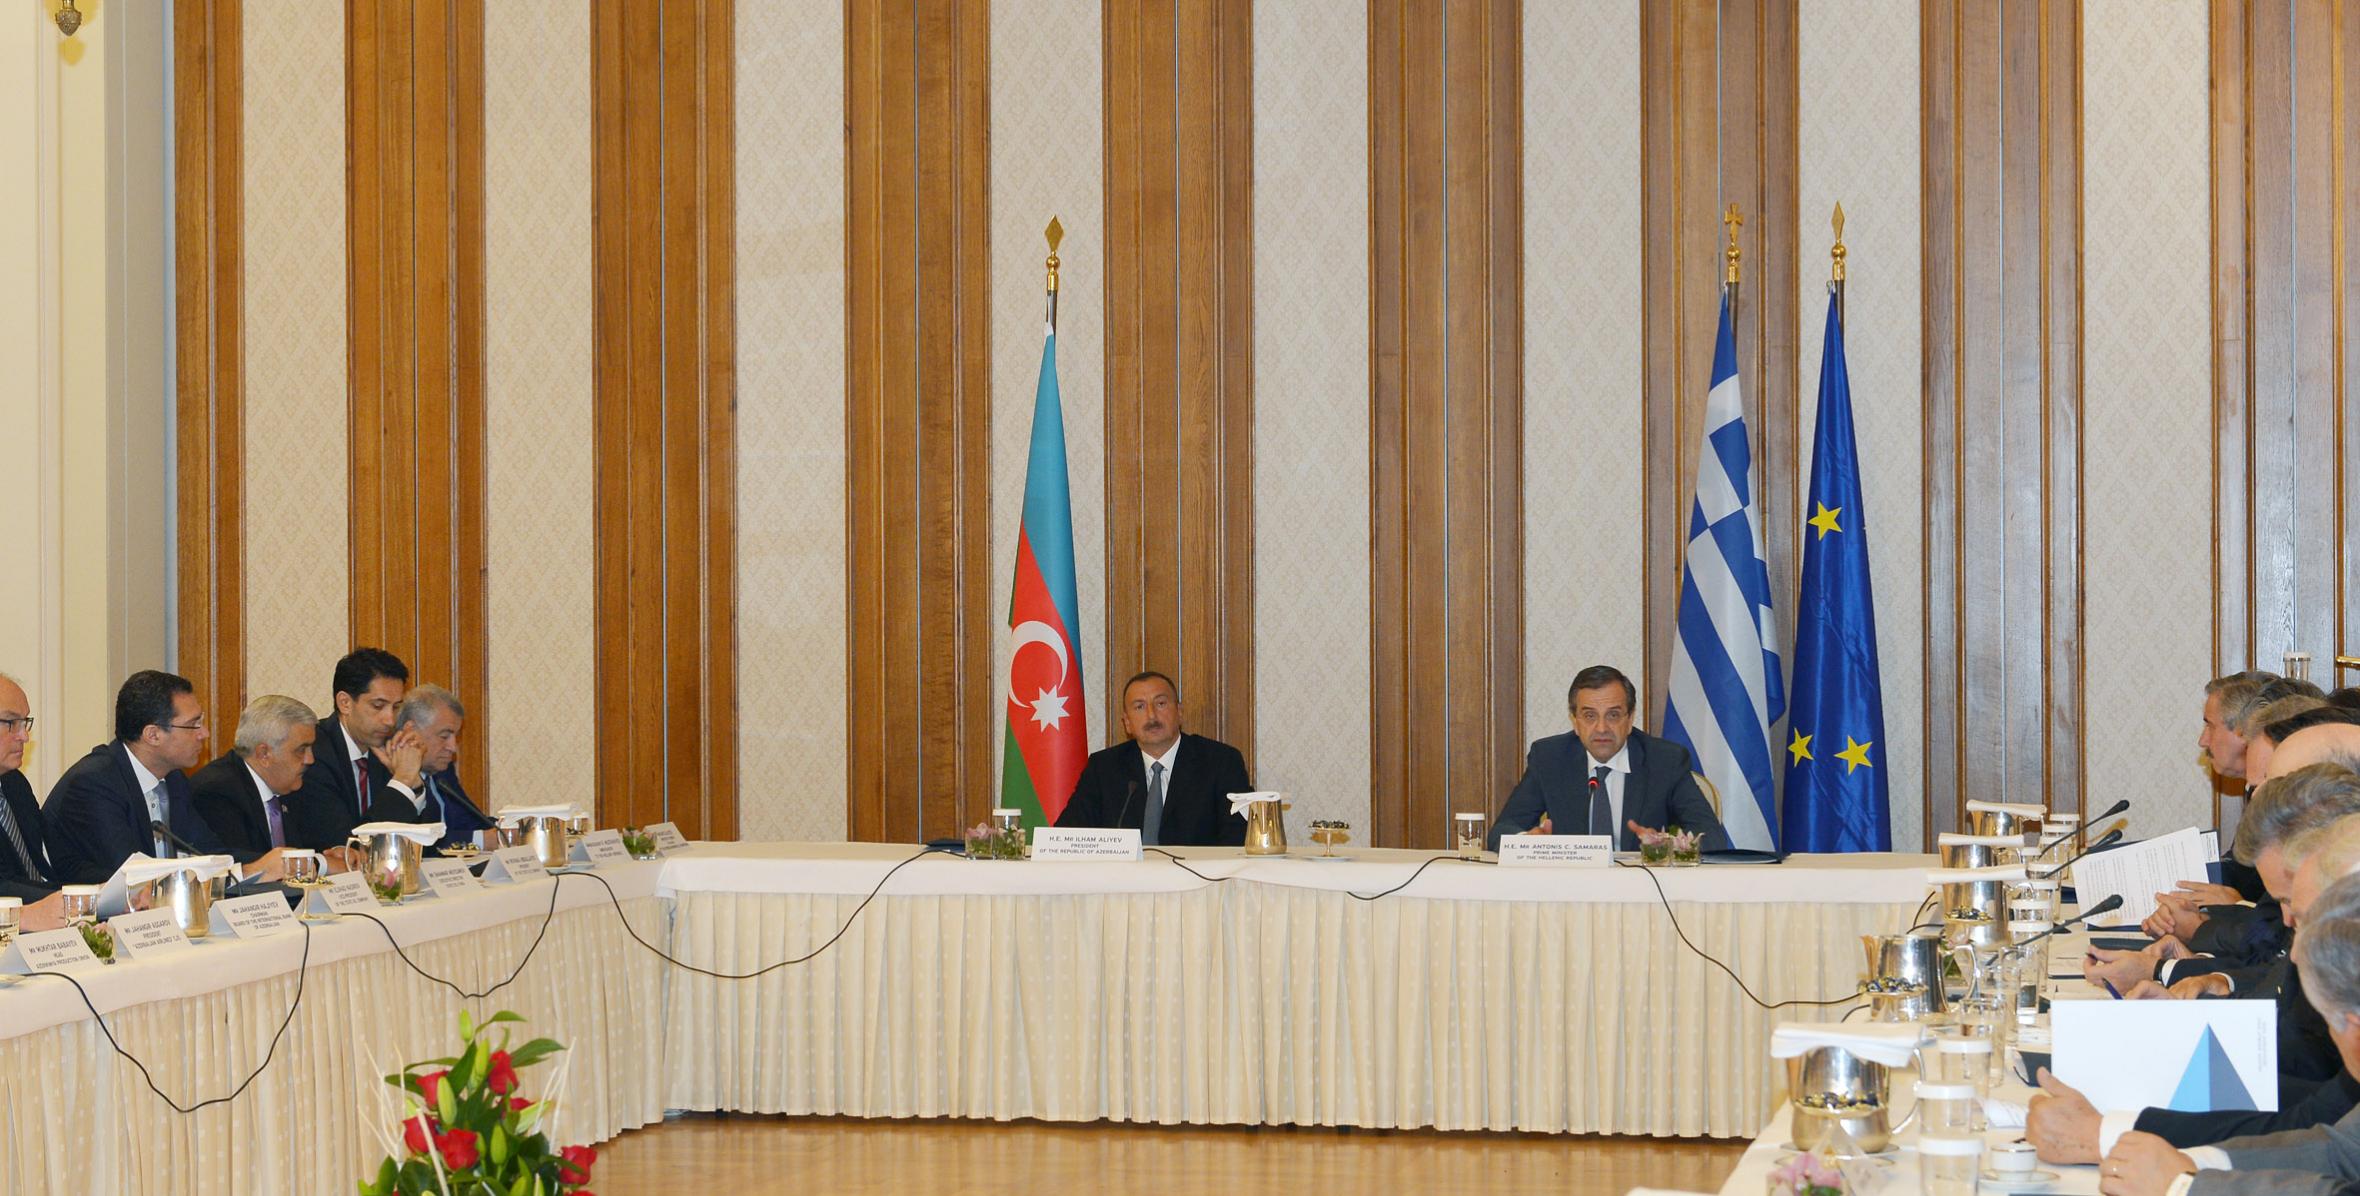 Состоялась встреча Ильхама Алиева и премьер-министра Греции Антониса Самараса с высокопоставленными деловыми людьми